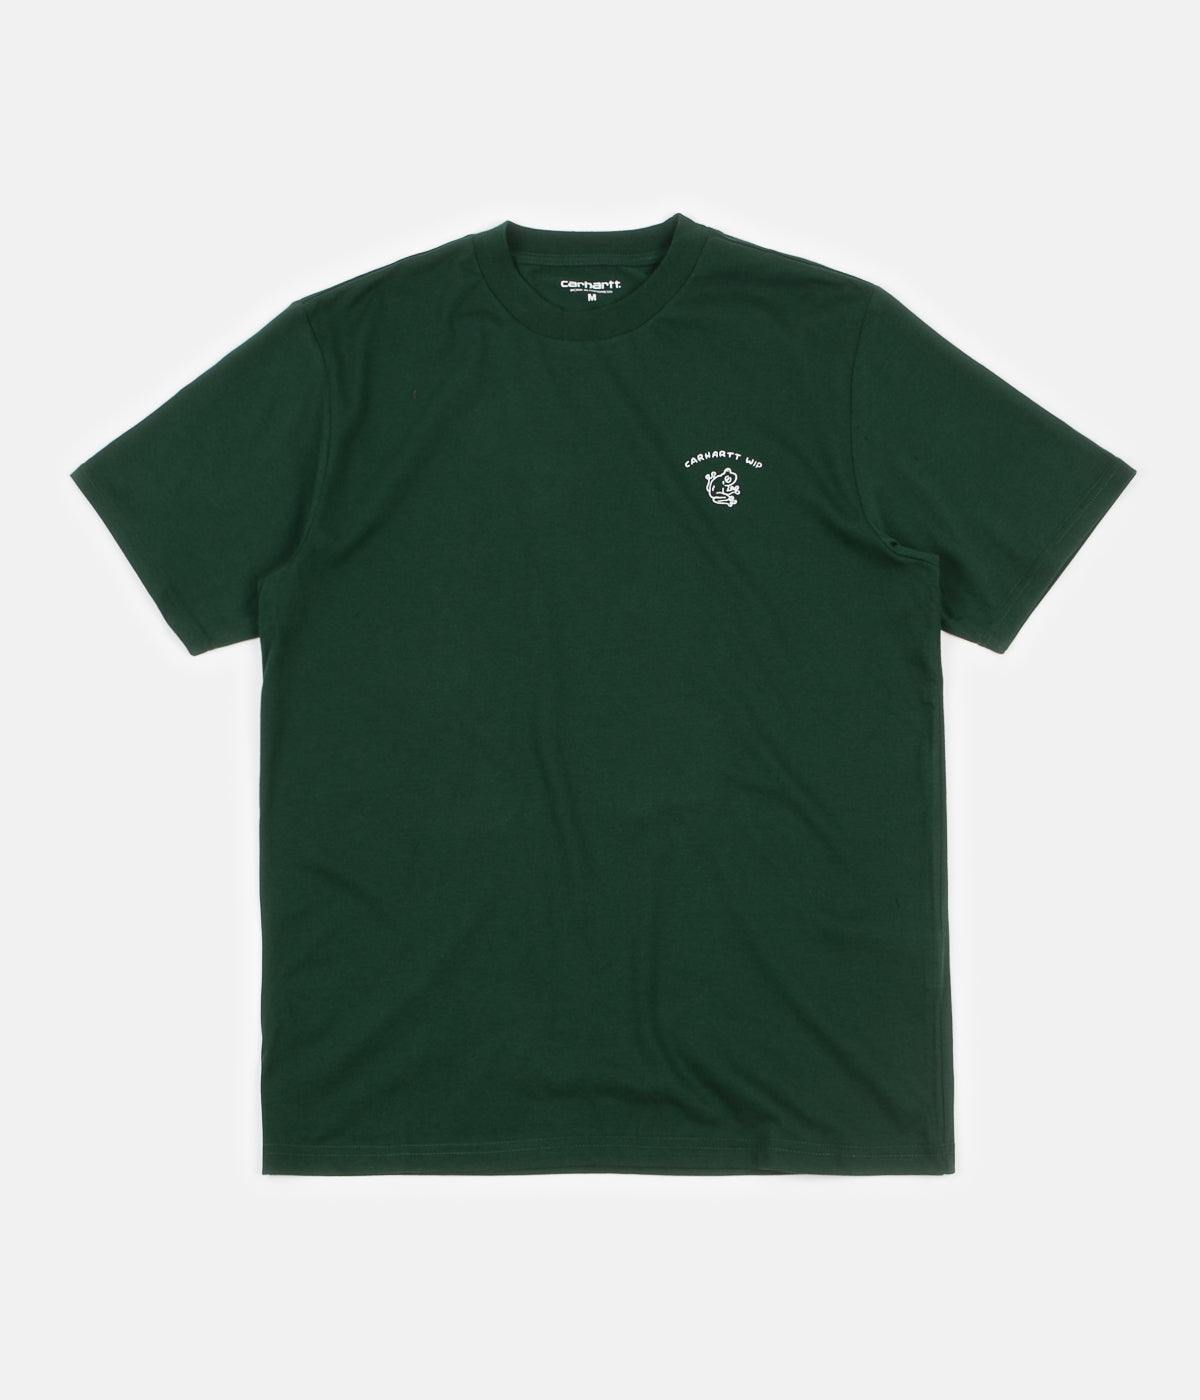 Carhartt Reverse Midas T-Shirt - Bottle Green / White | Flatspot